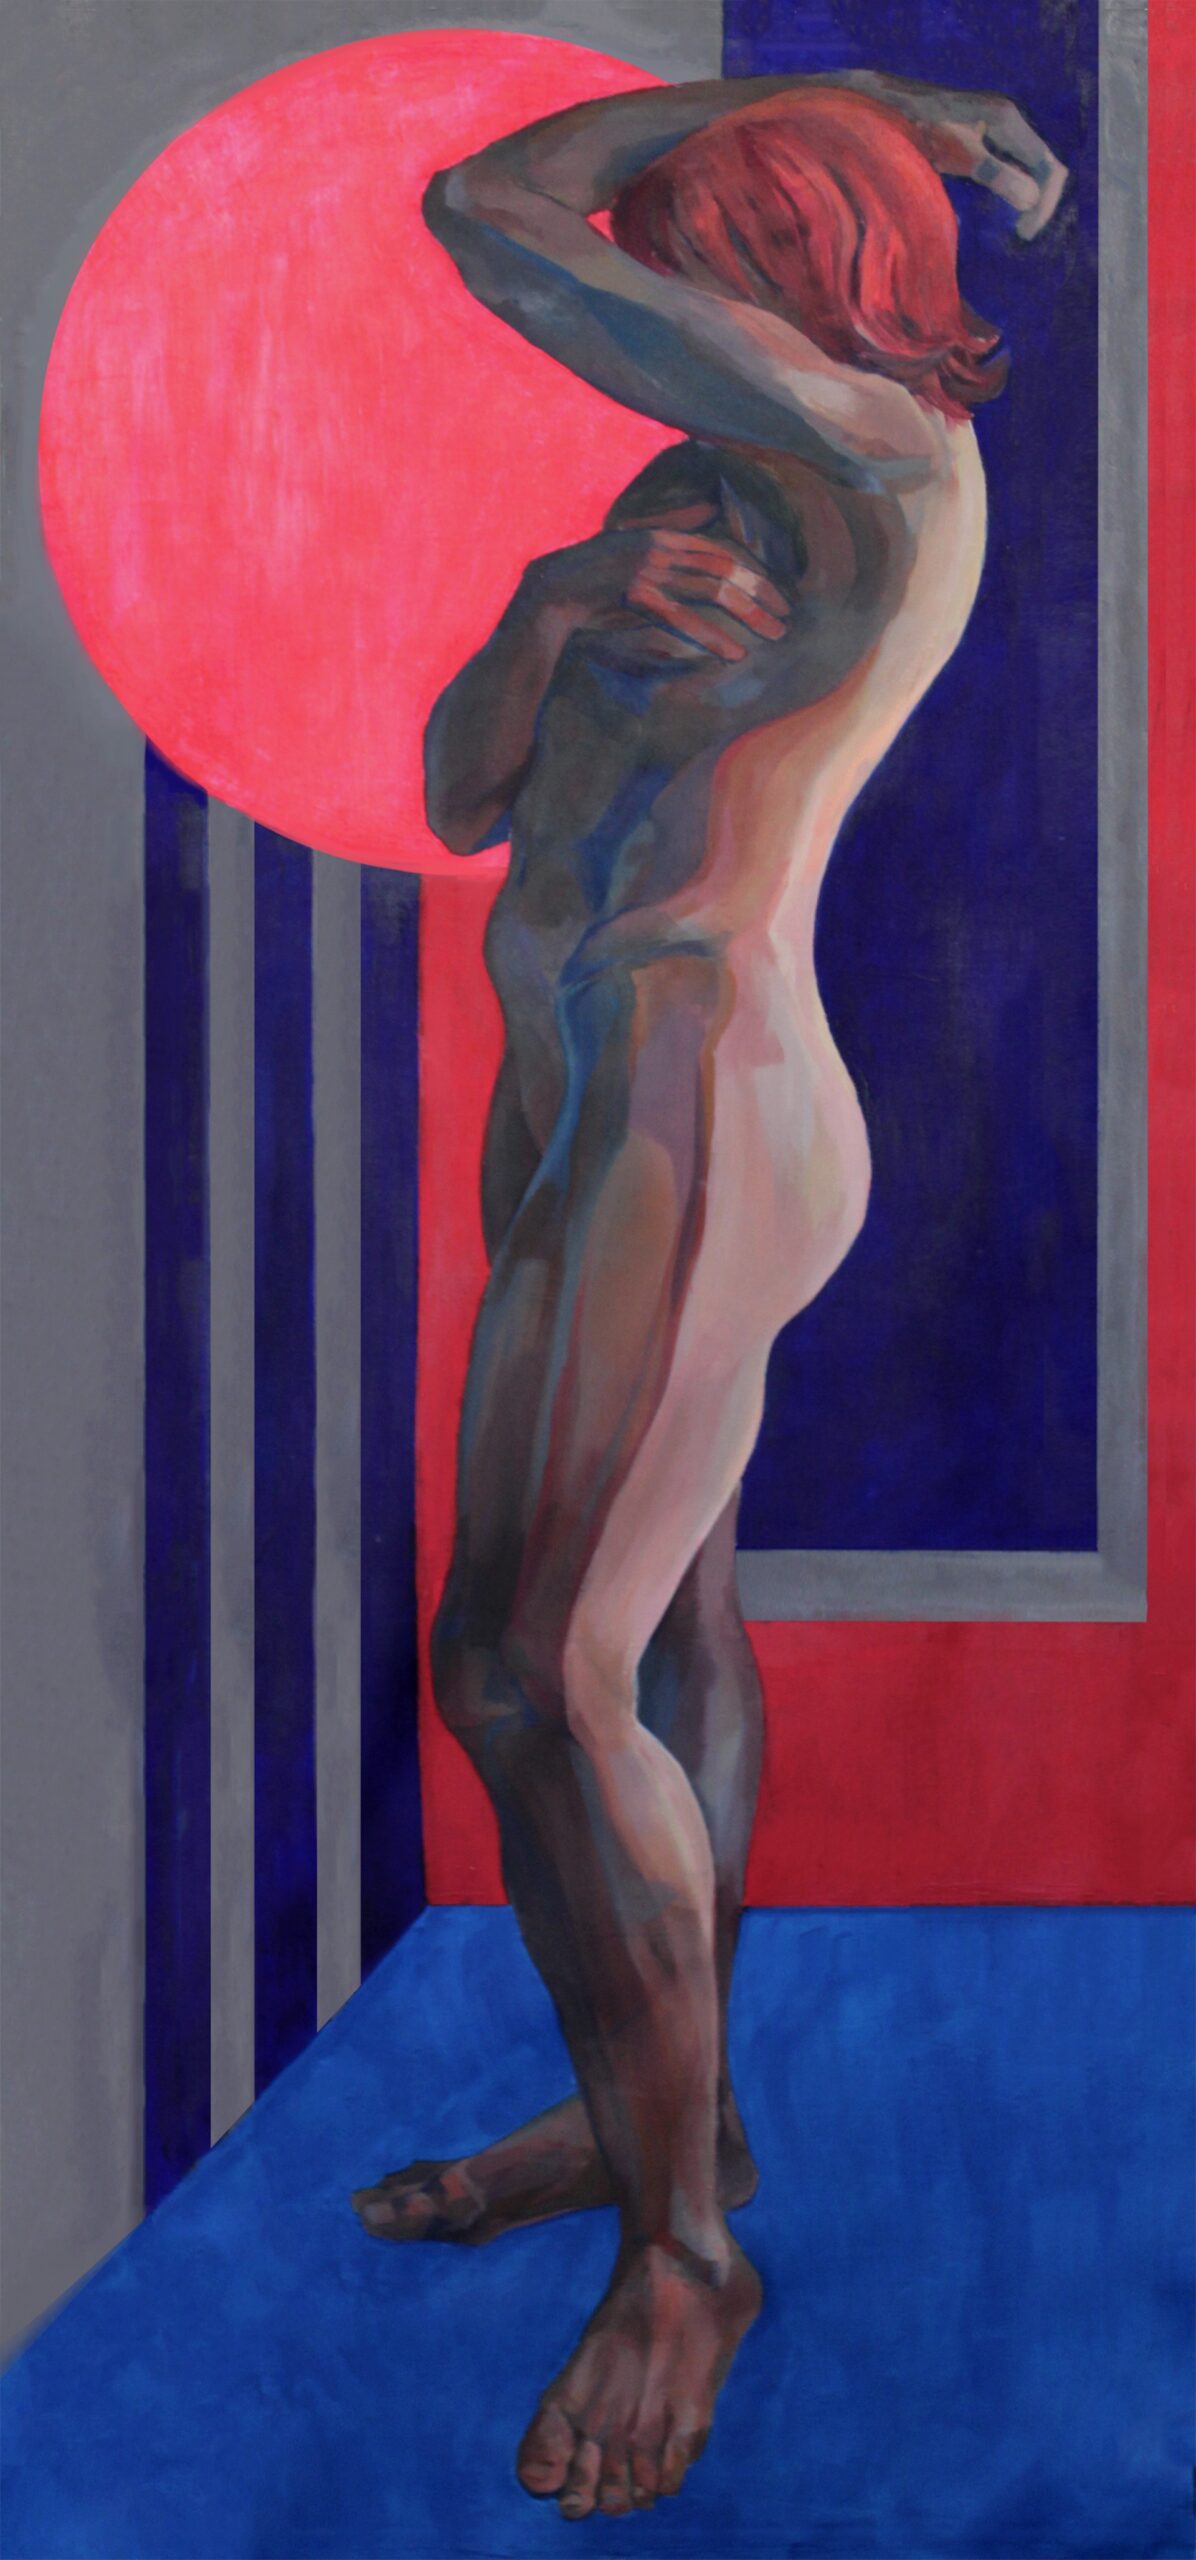 Usytuowana do widza lewym bokiem, ujęta całościowo postać kobieca wtulająca twarz w lewe ramię na tle czerwono-niebieskiej kompozycji geometrycznej.